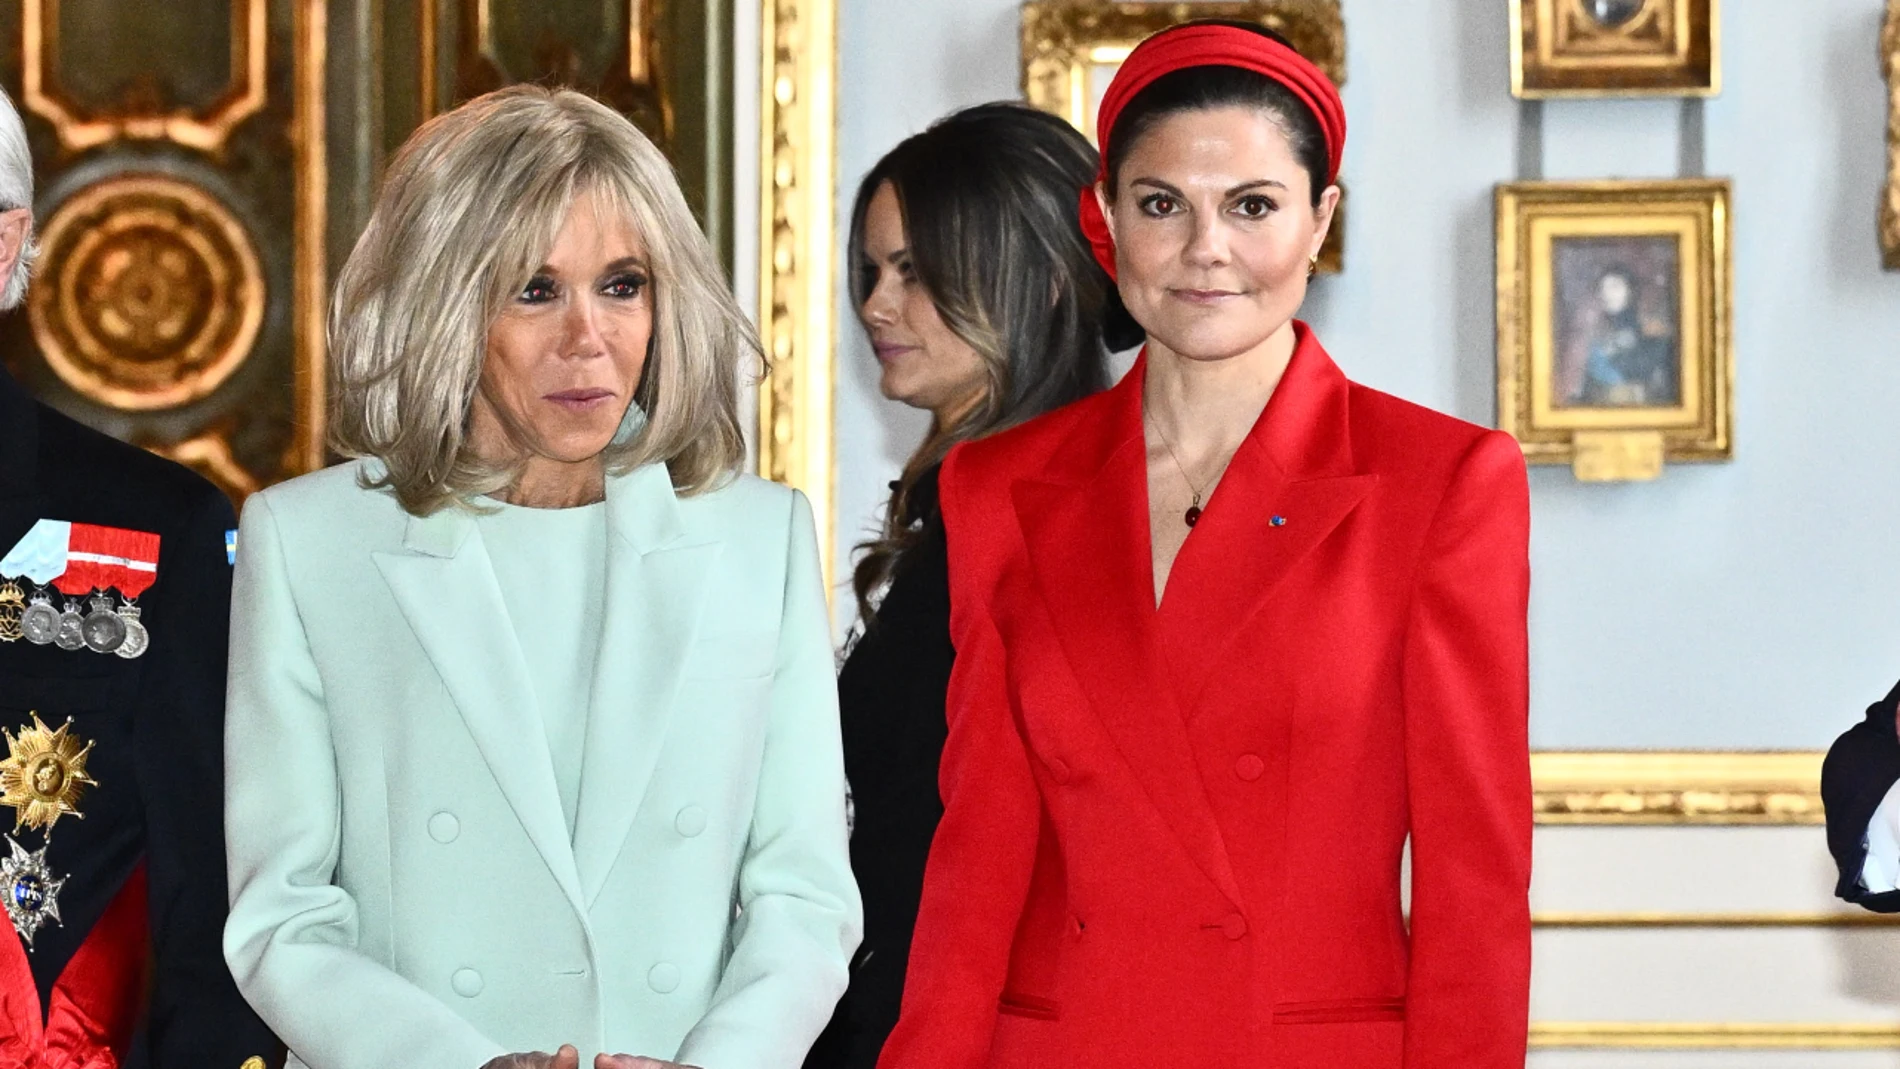 Las princesas de Suecia y Brigitte Macron con los looks más tendencia.